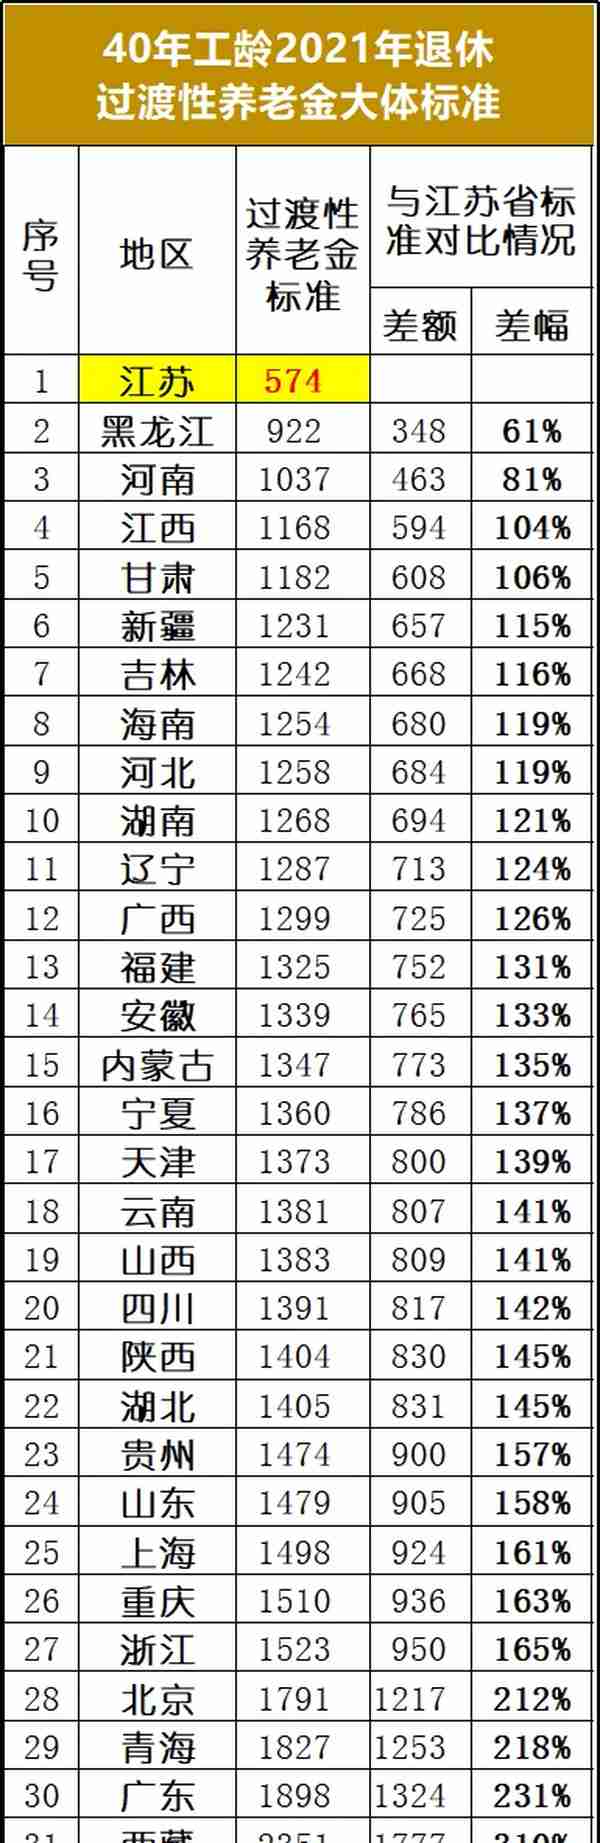 江苏省过渡性养老金计算公式中的“12%”所产生的疑问